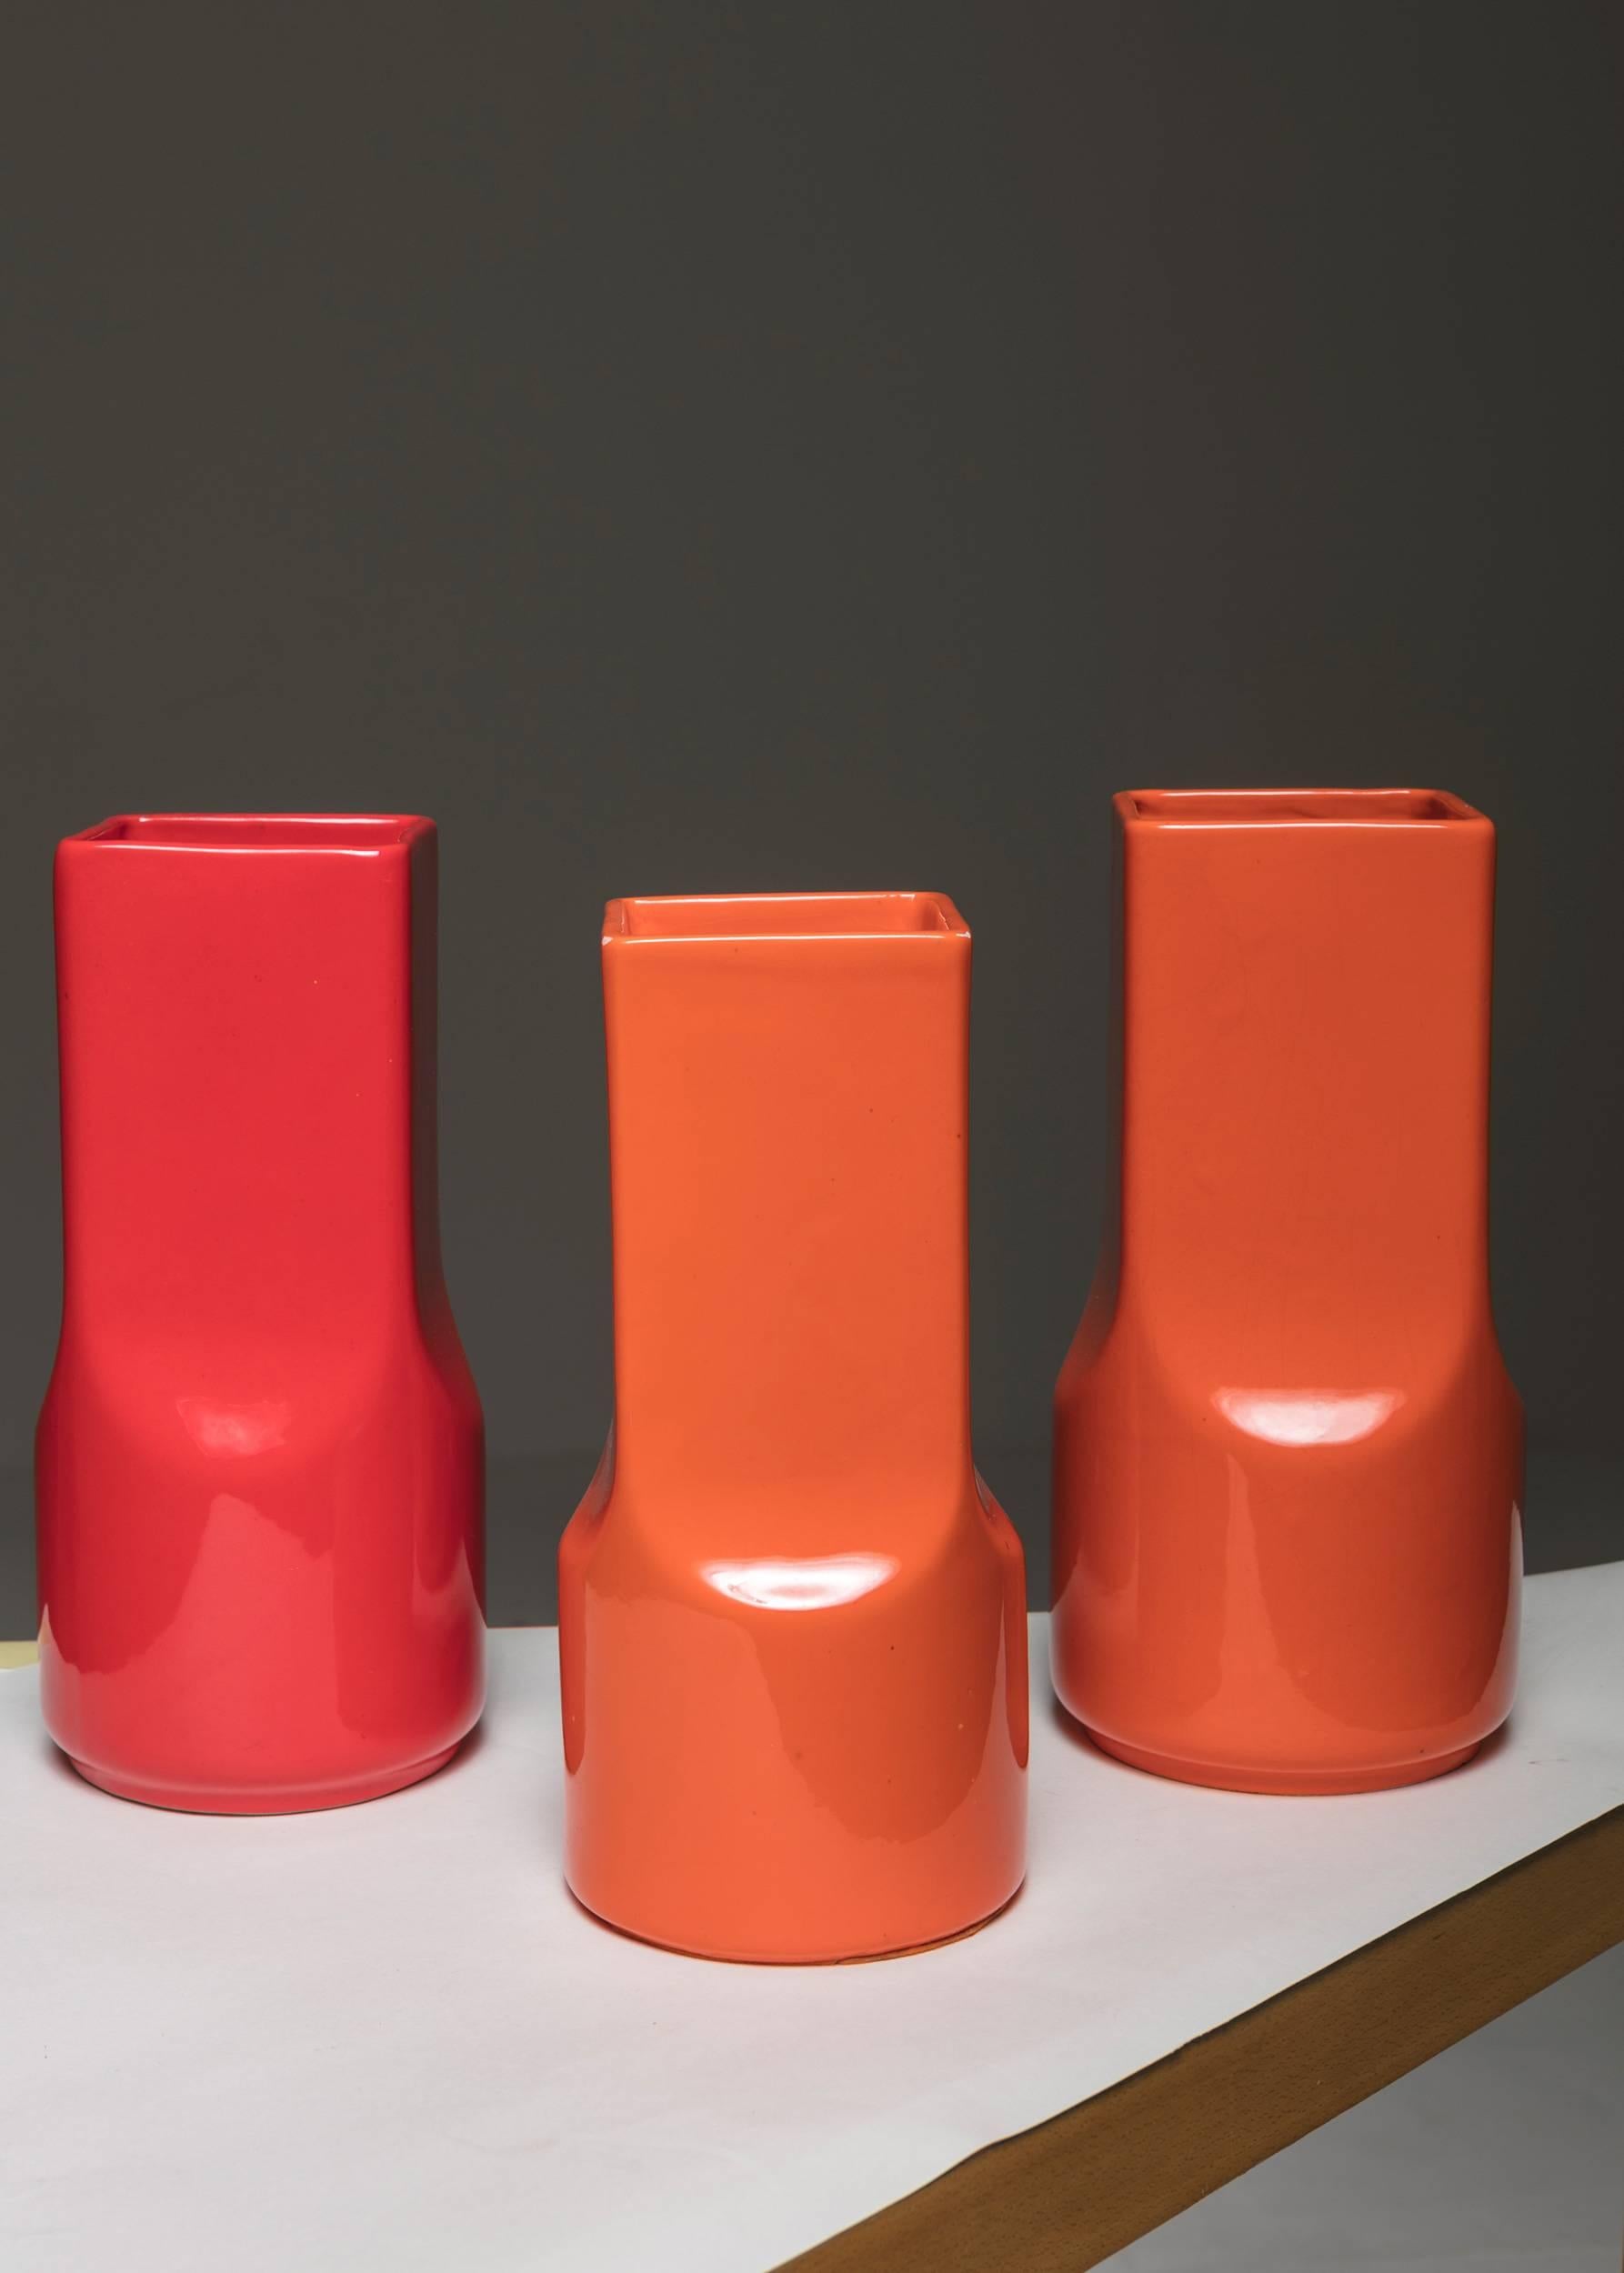 Ensemble de deux vases en céramique par Studio O.P.I. pour Gabbianelli.
note : pour l'instant, il n'y a qu'une seule pièce rouge et une seule pièce blanche disponibles.
Le prix se réfère à l'ensemble de deux pièces.